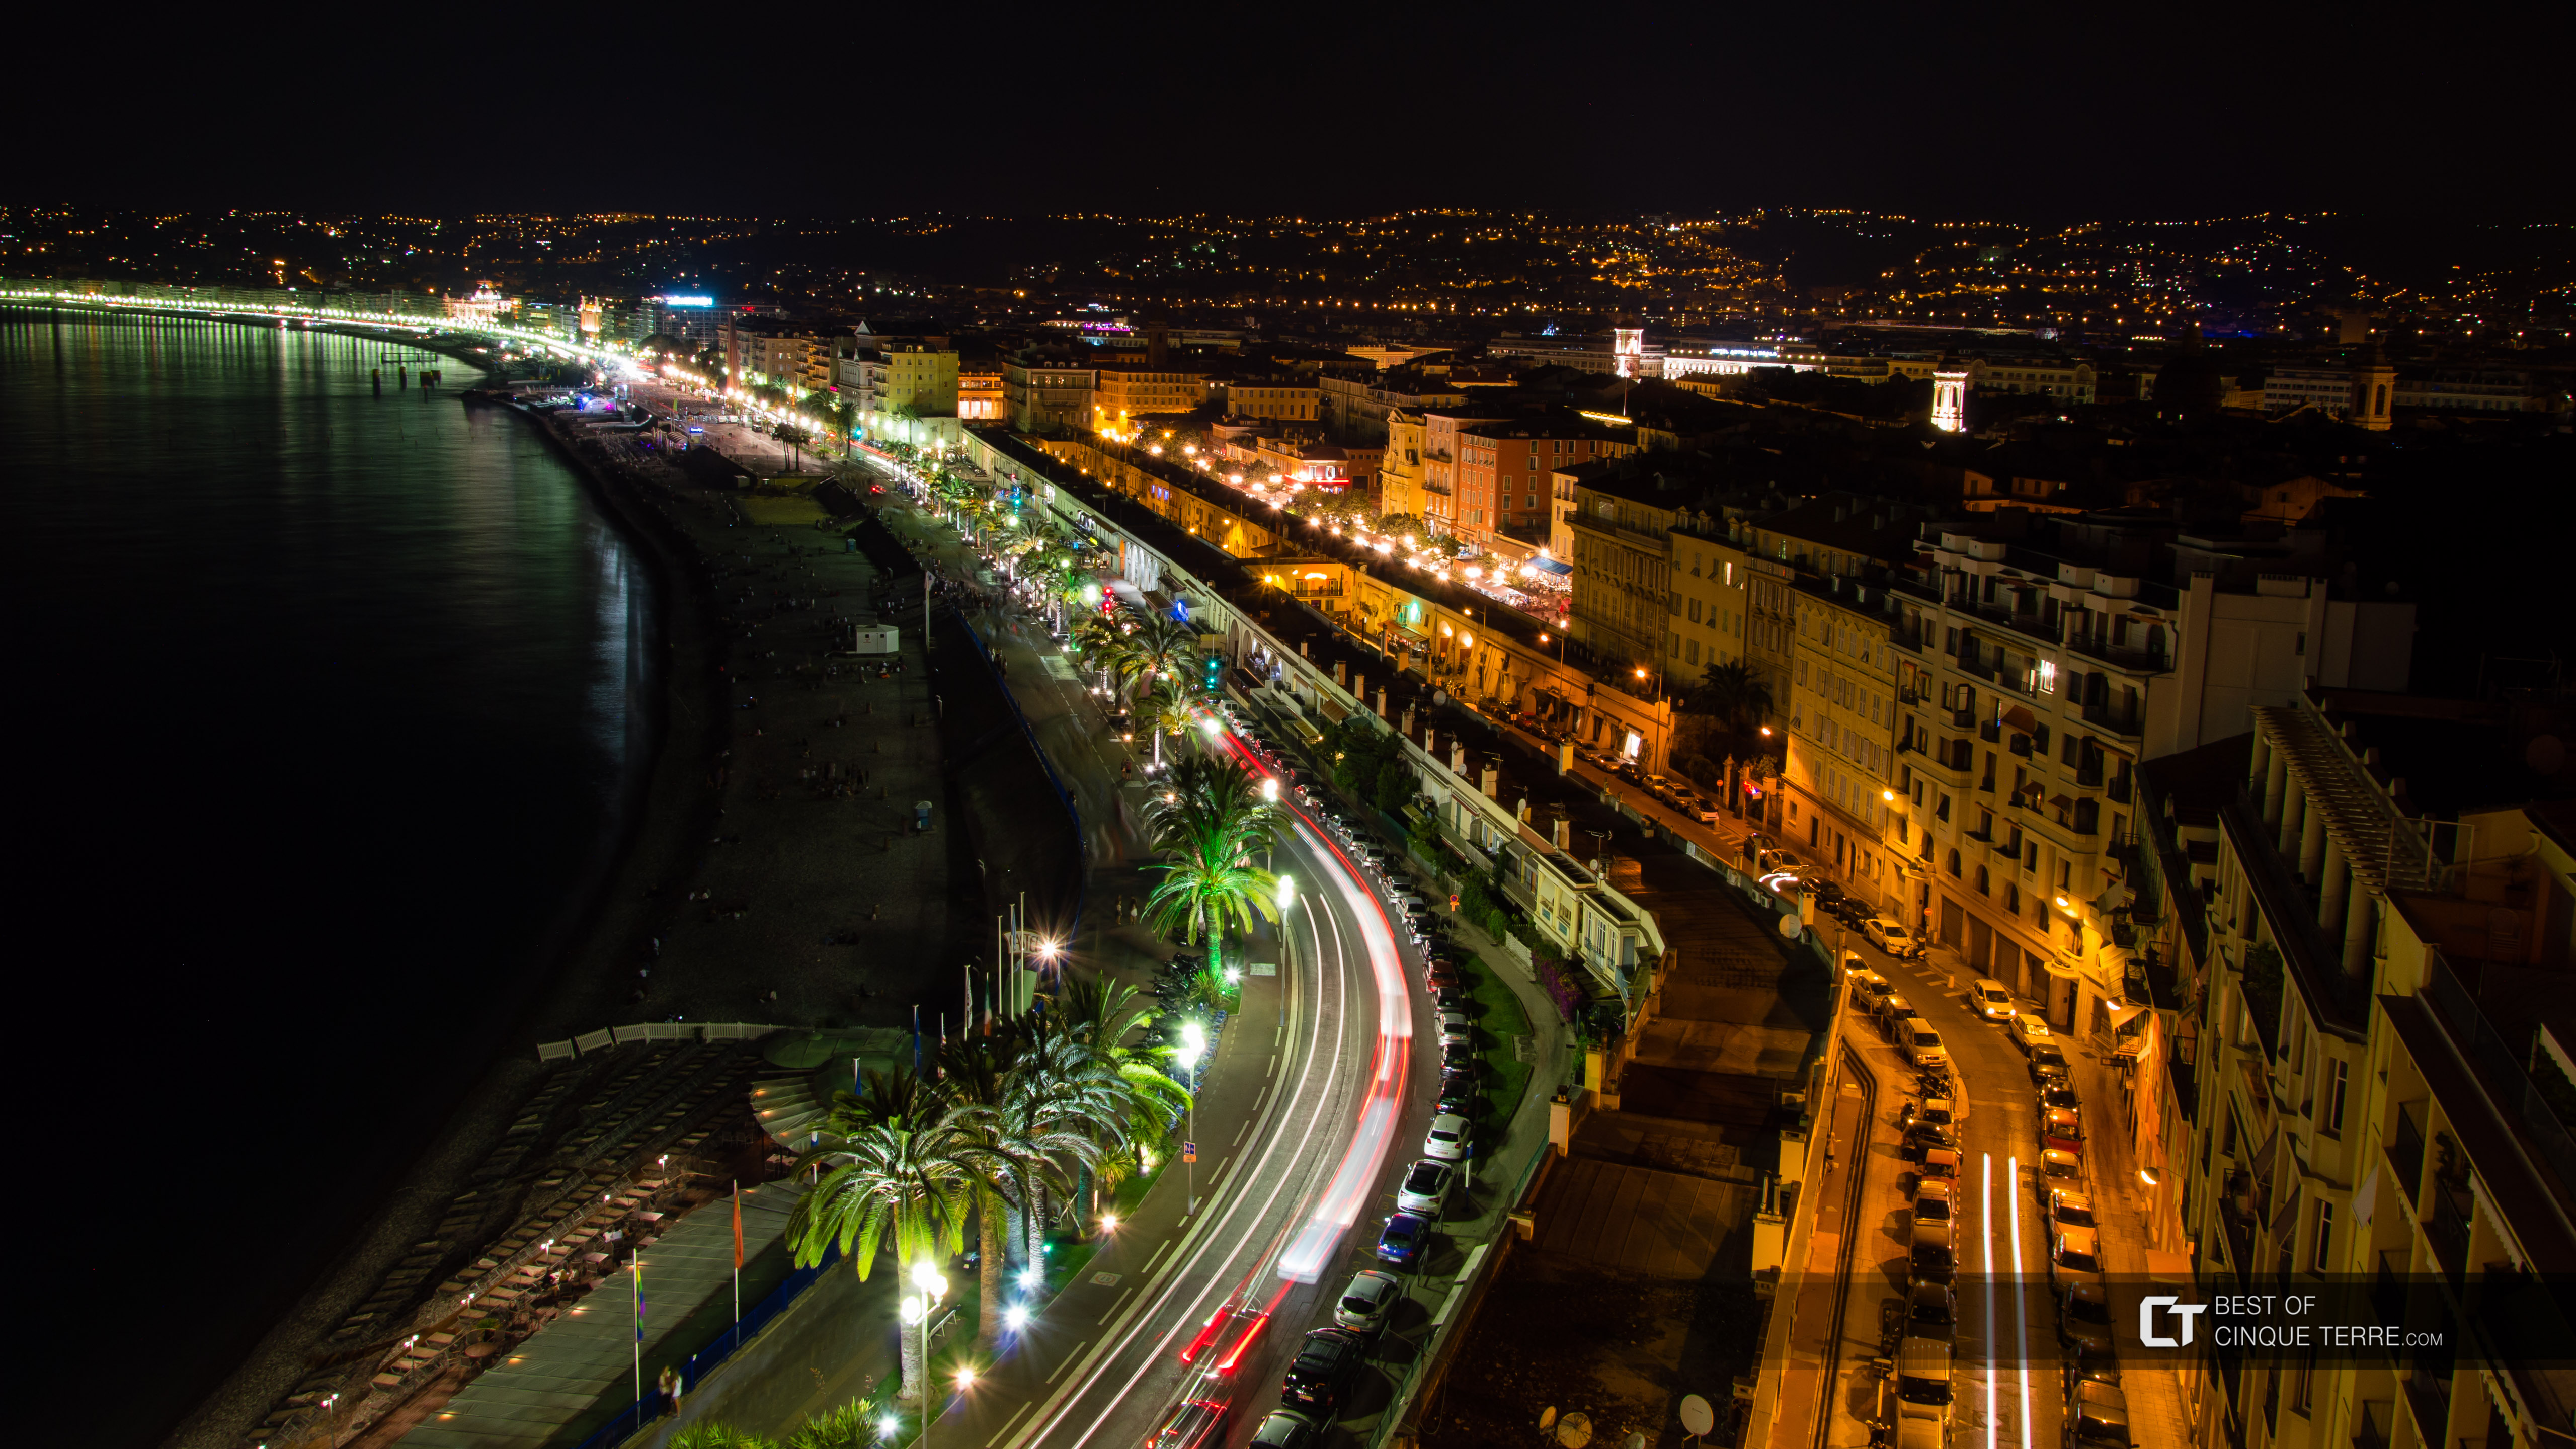 Promenade des Anglais desde el punto panorámico de la Colina del Castillo en la noche, Niza, Francia